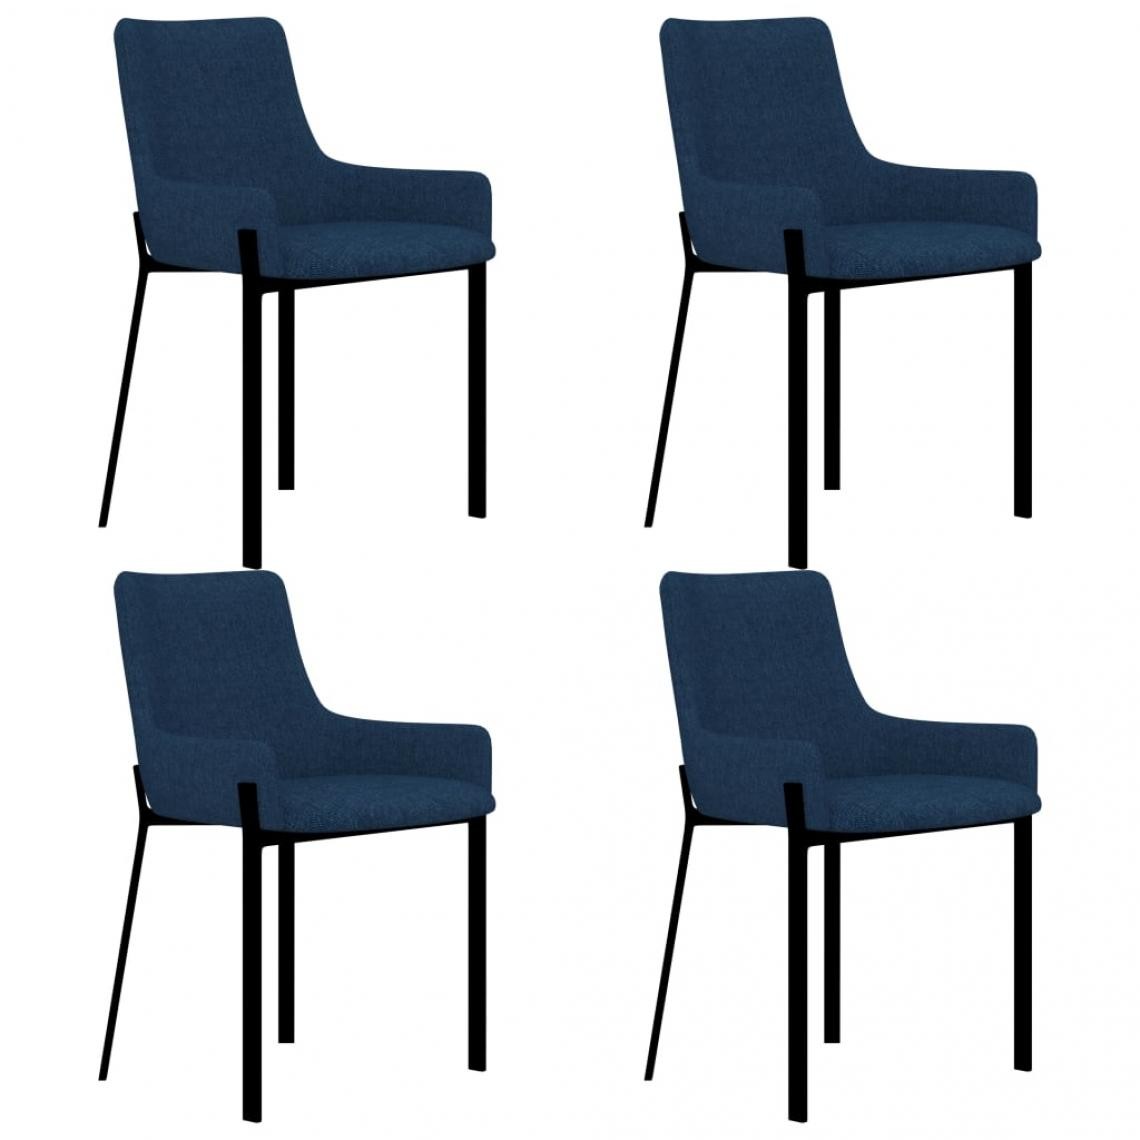 Decoshop26 - Lot de 4 chaises de salle à manger cuisine design moderne tissu bleu CDS021301 - Chaises